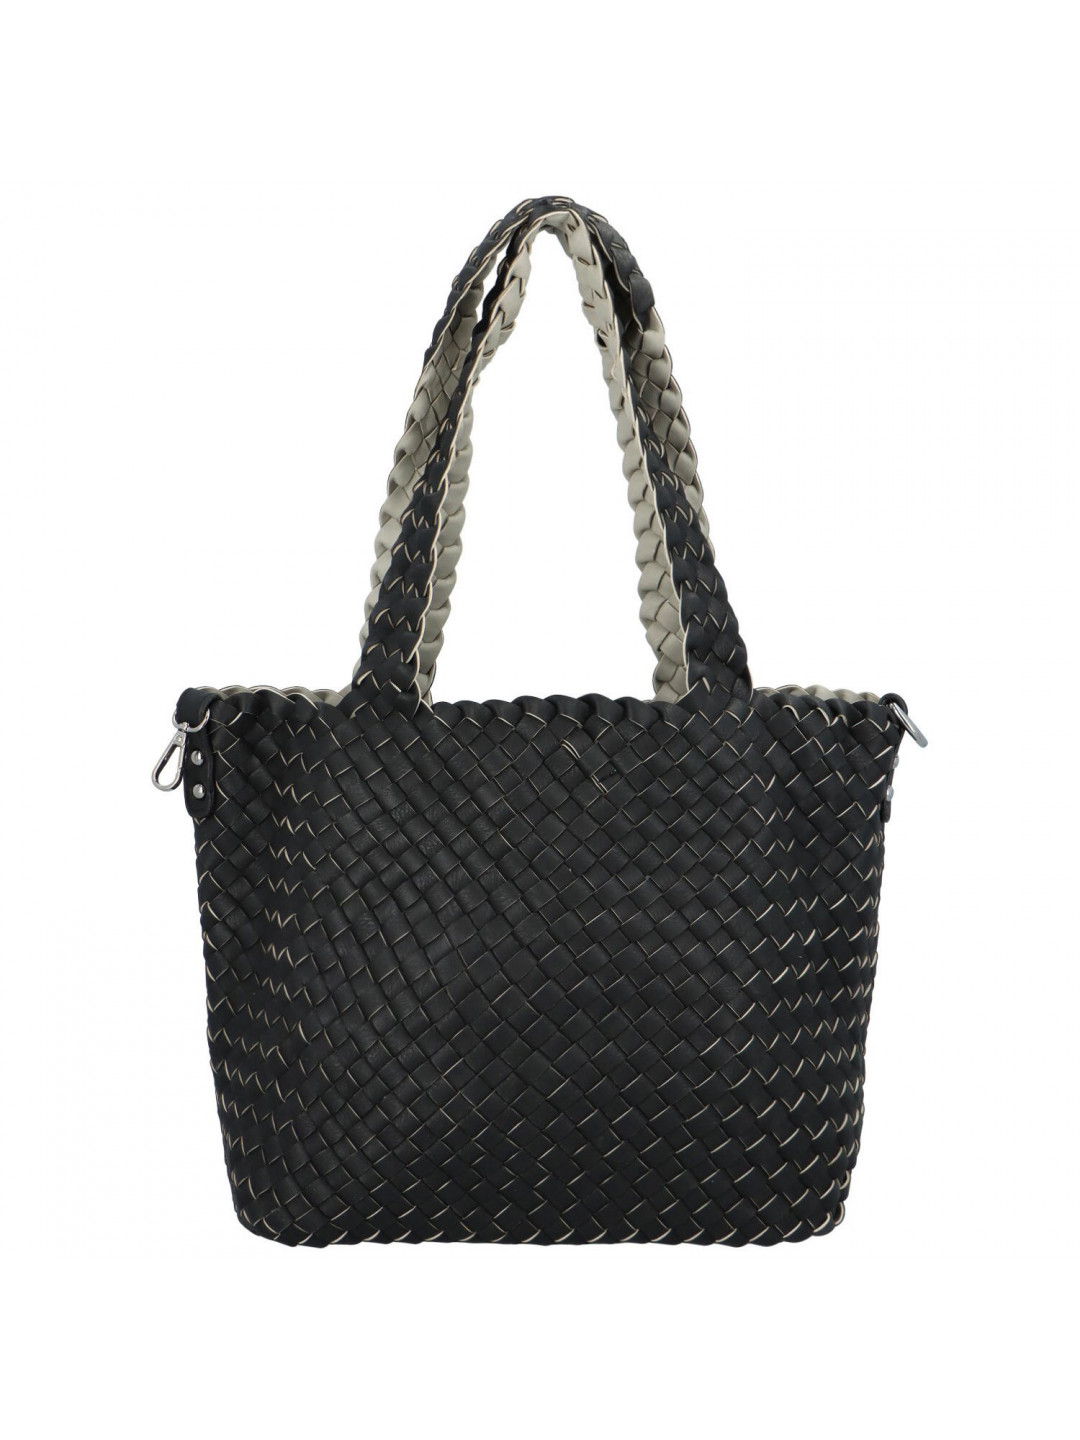 Dámská kabelka přes rameno černo šedá – Paolo bags Ukina